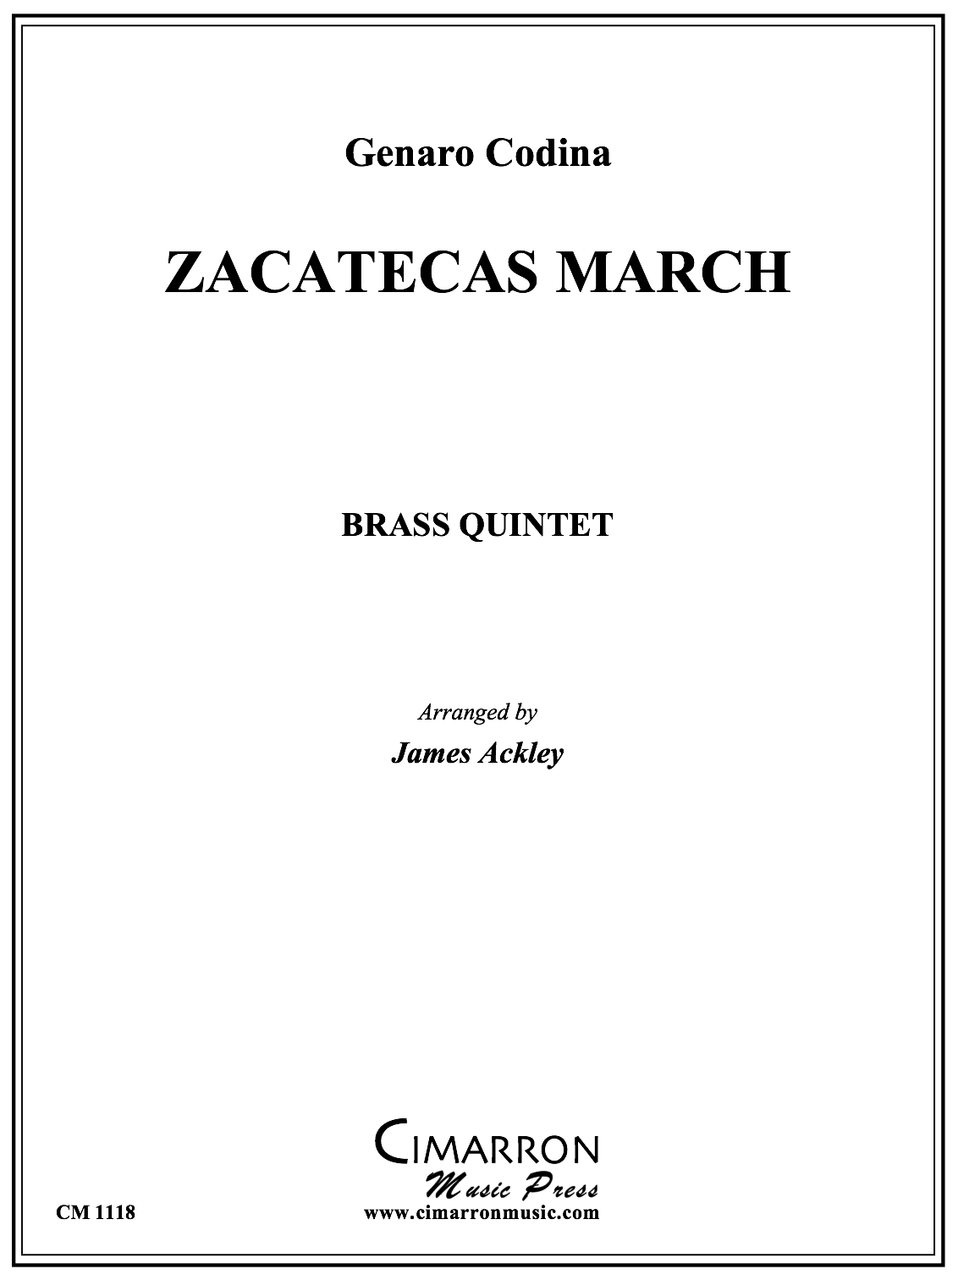 best washington post march brass quintet sheet music